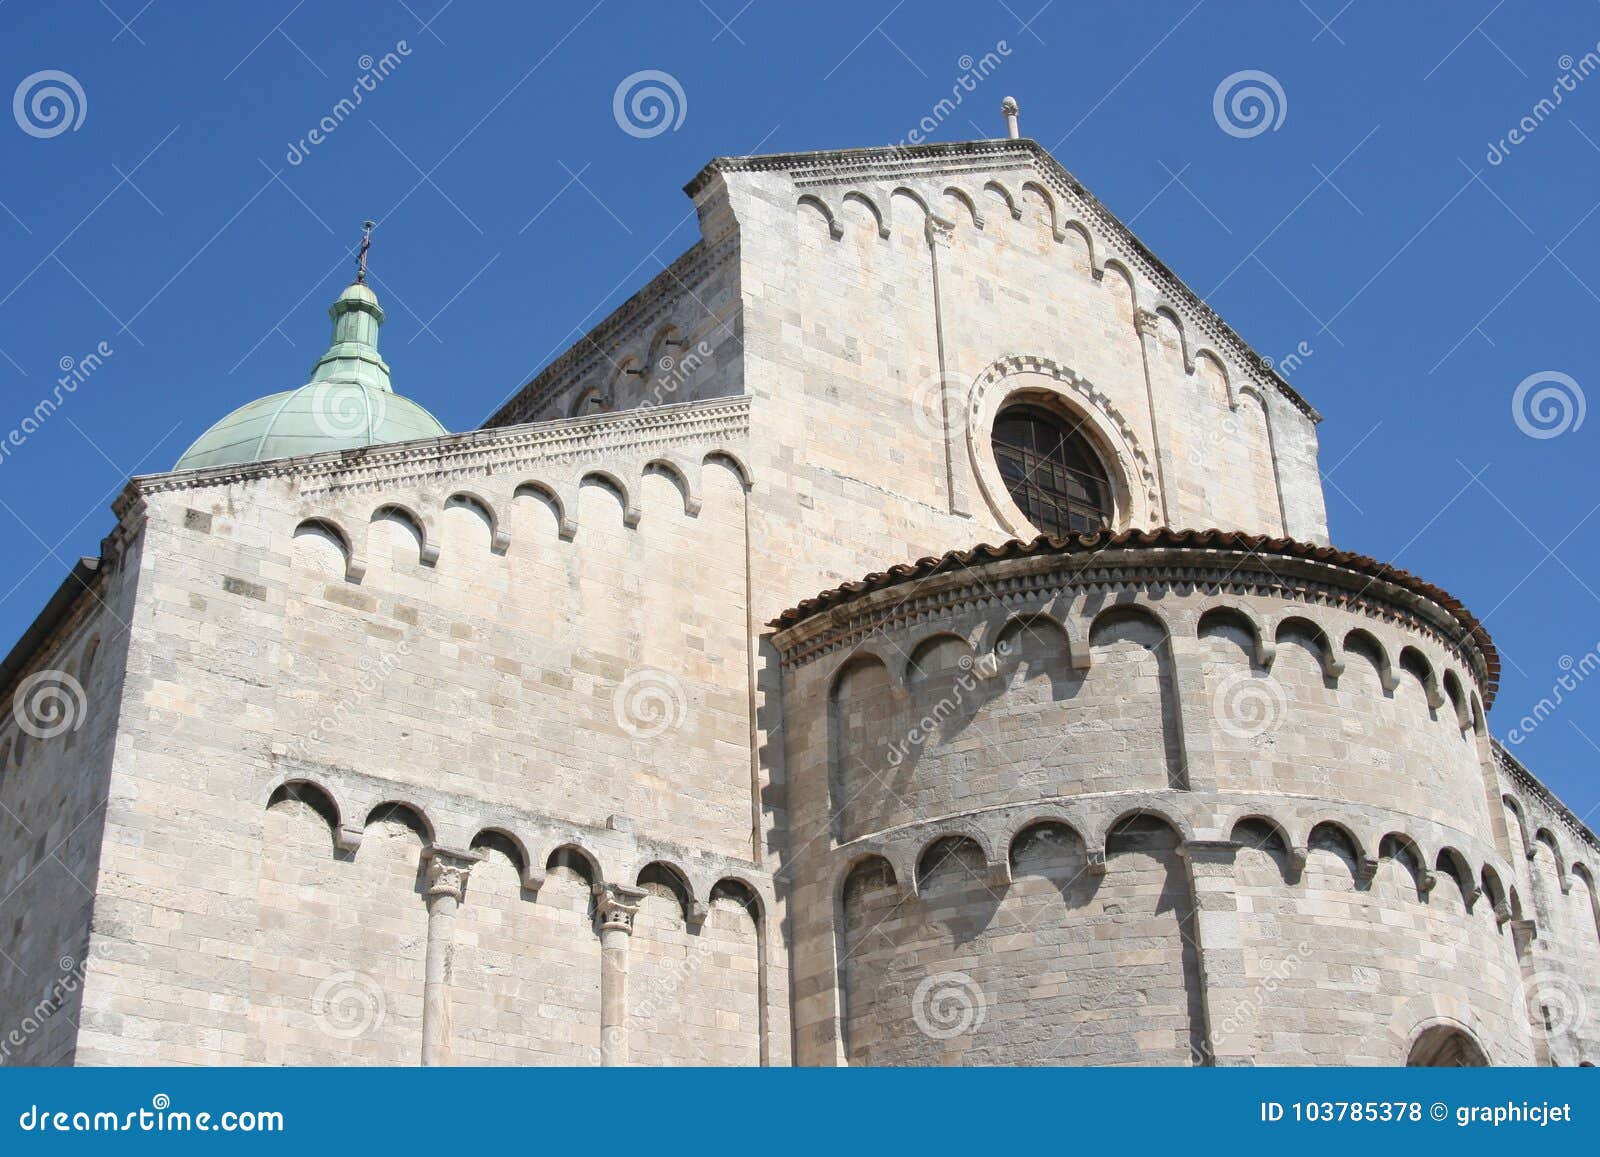 apse of romanic church in ancona, marche, italy